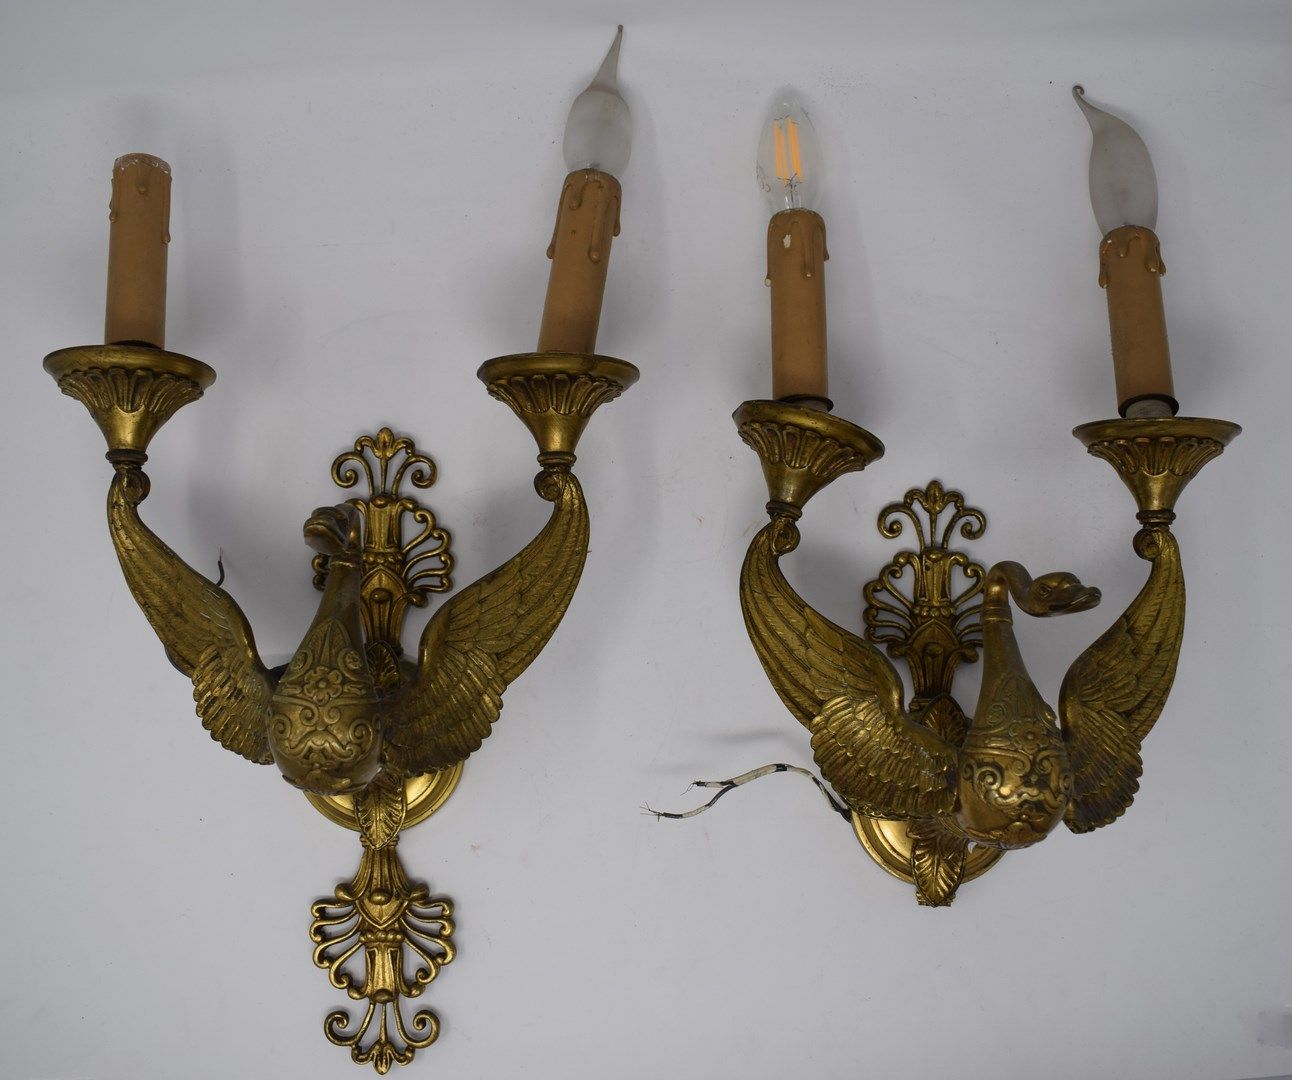 Null 两个帝国风格的壁灯，天鹅颈

青铜色，带有金色的铜锈。

磨损和氧化

高36厘米，不含灯泡